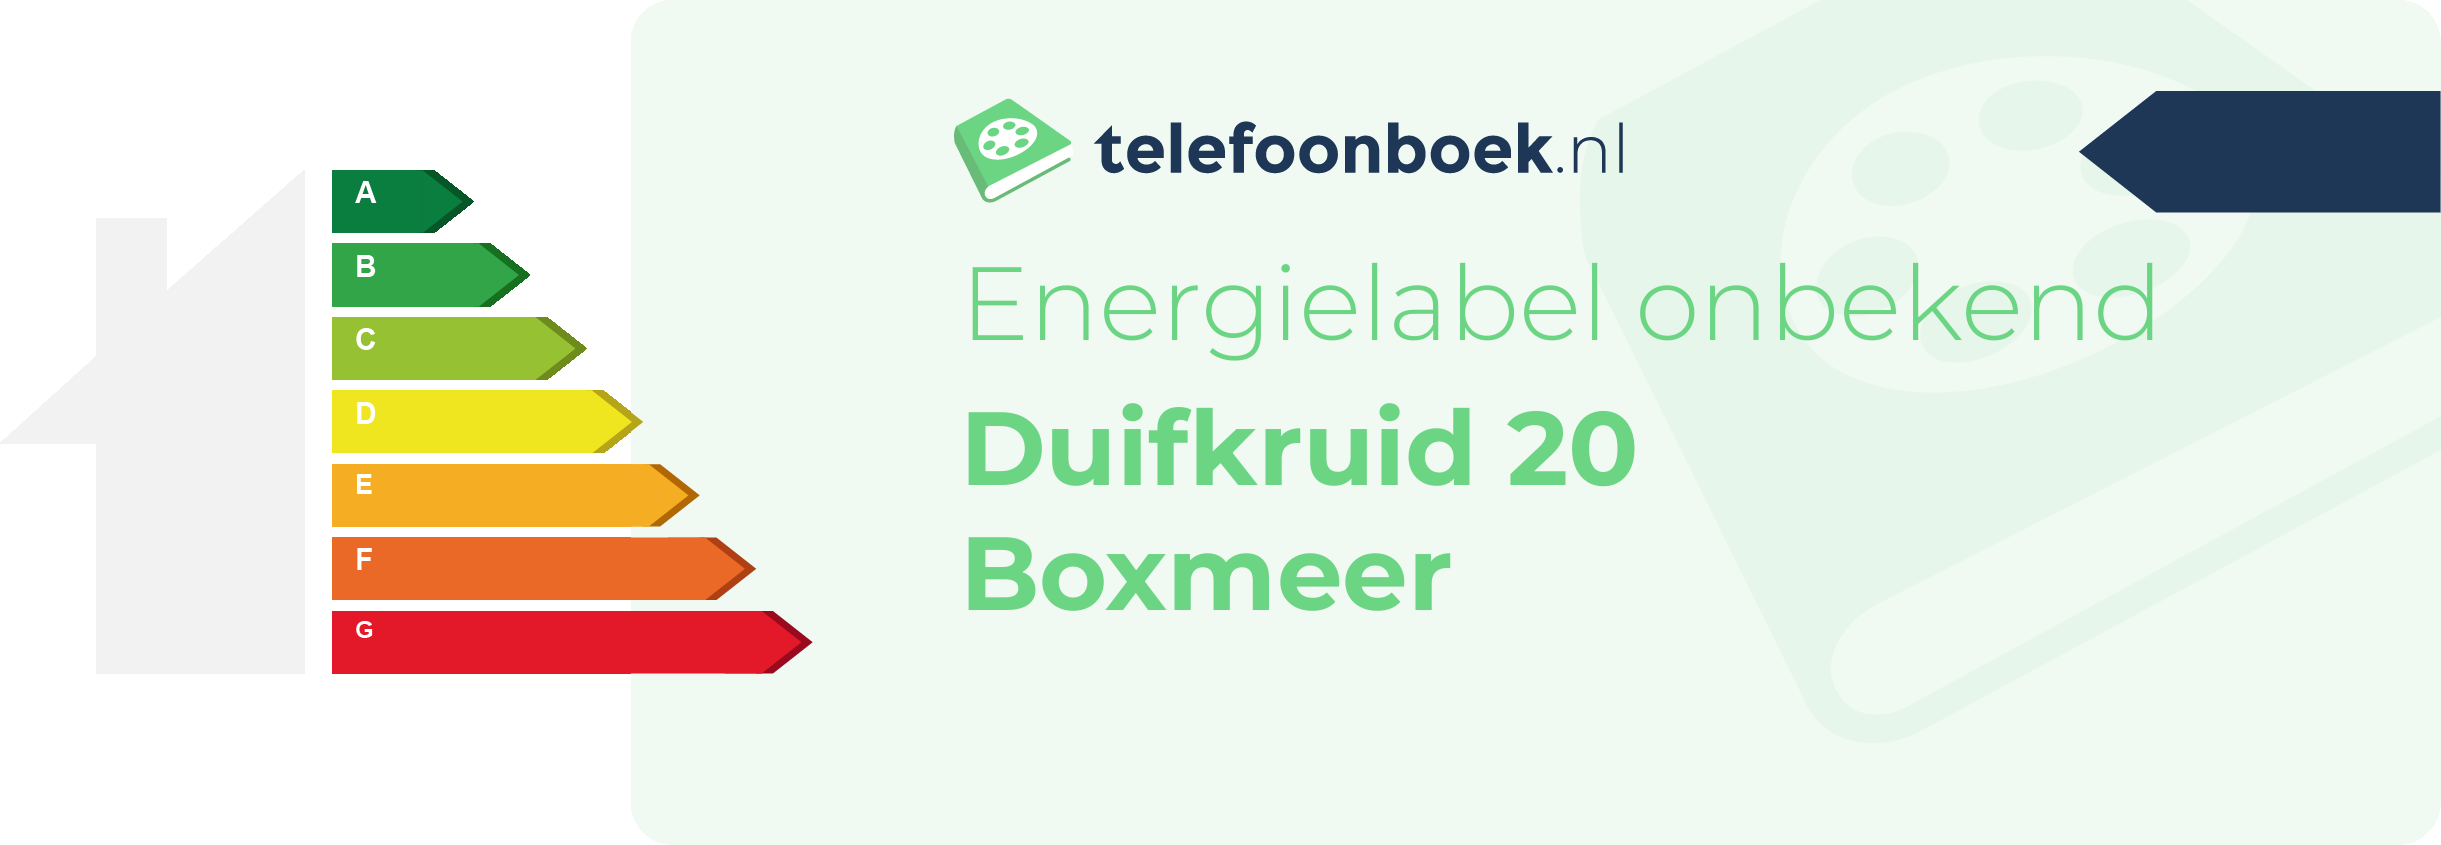 Energielabel Duifkruid 20 Boxmeer